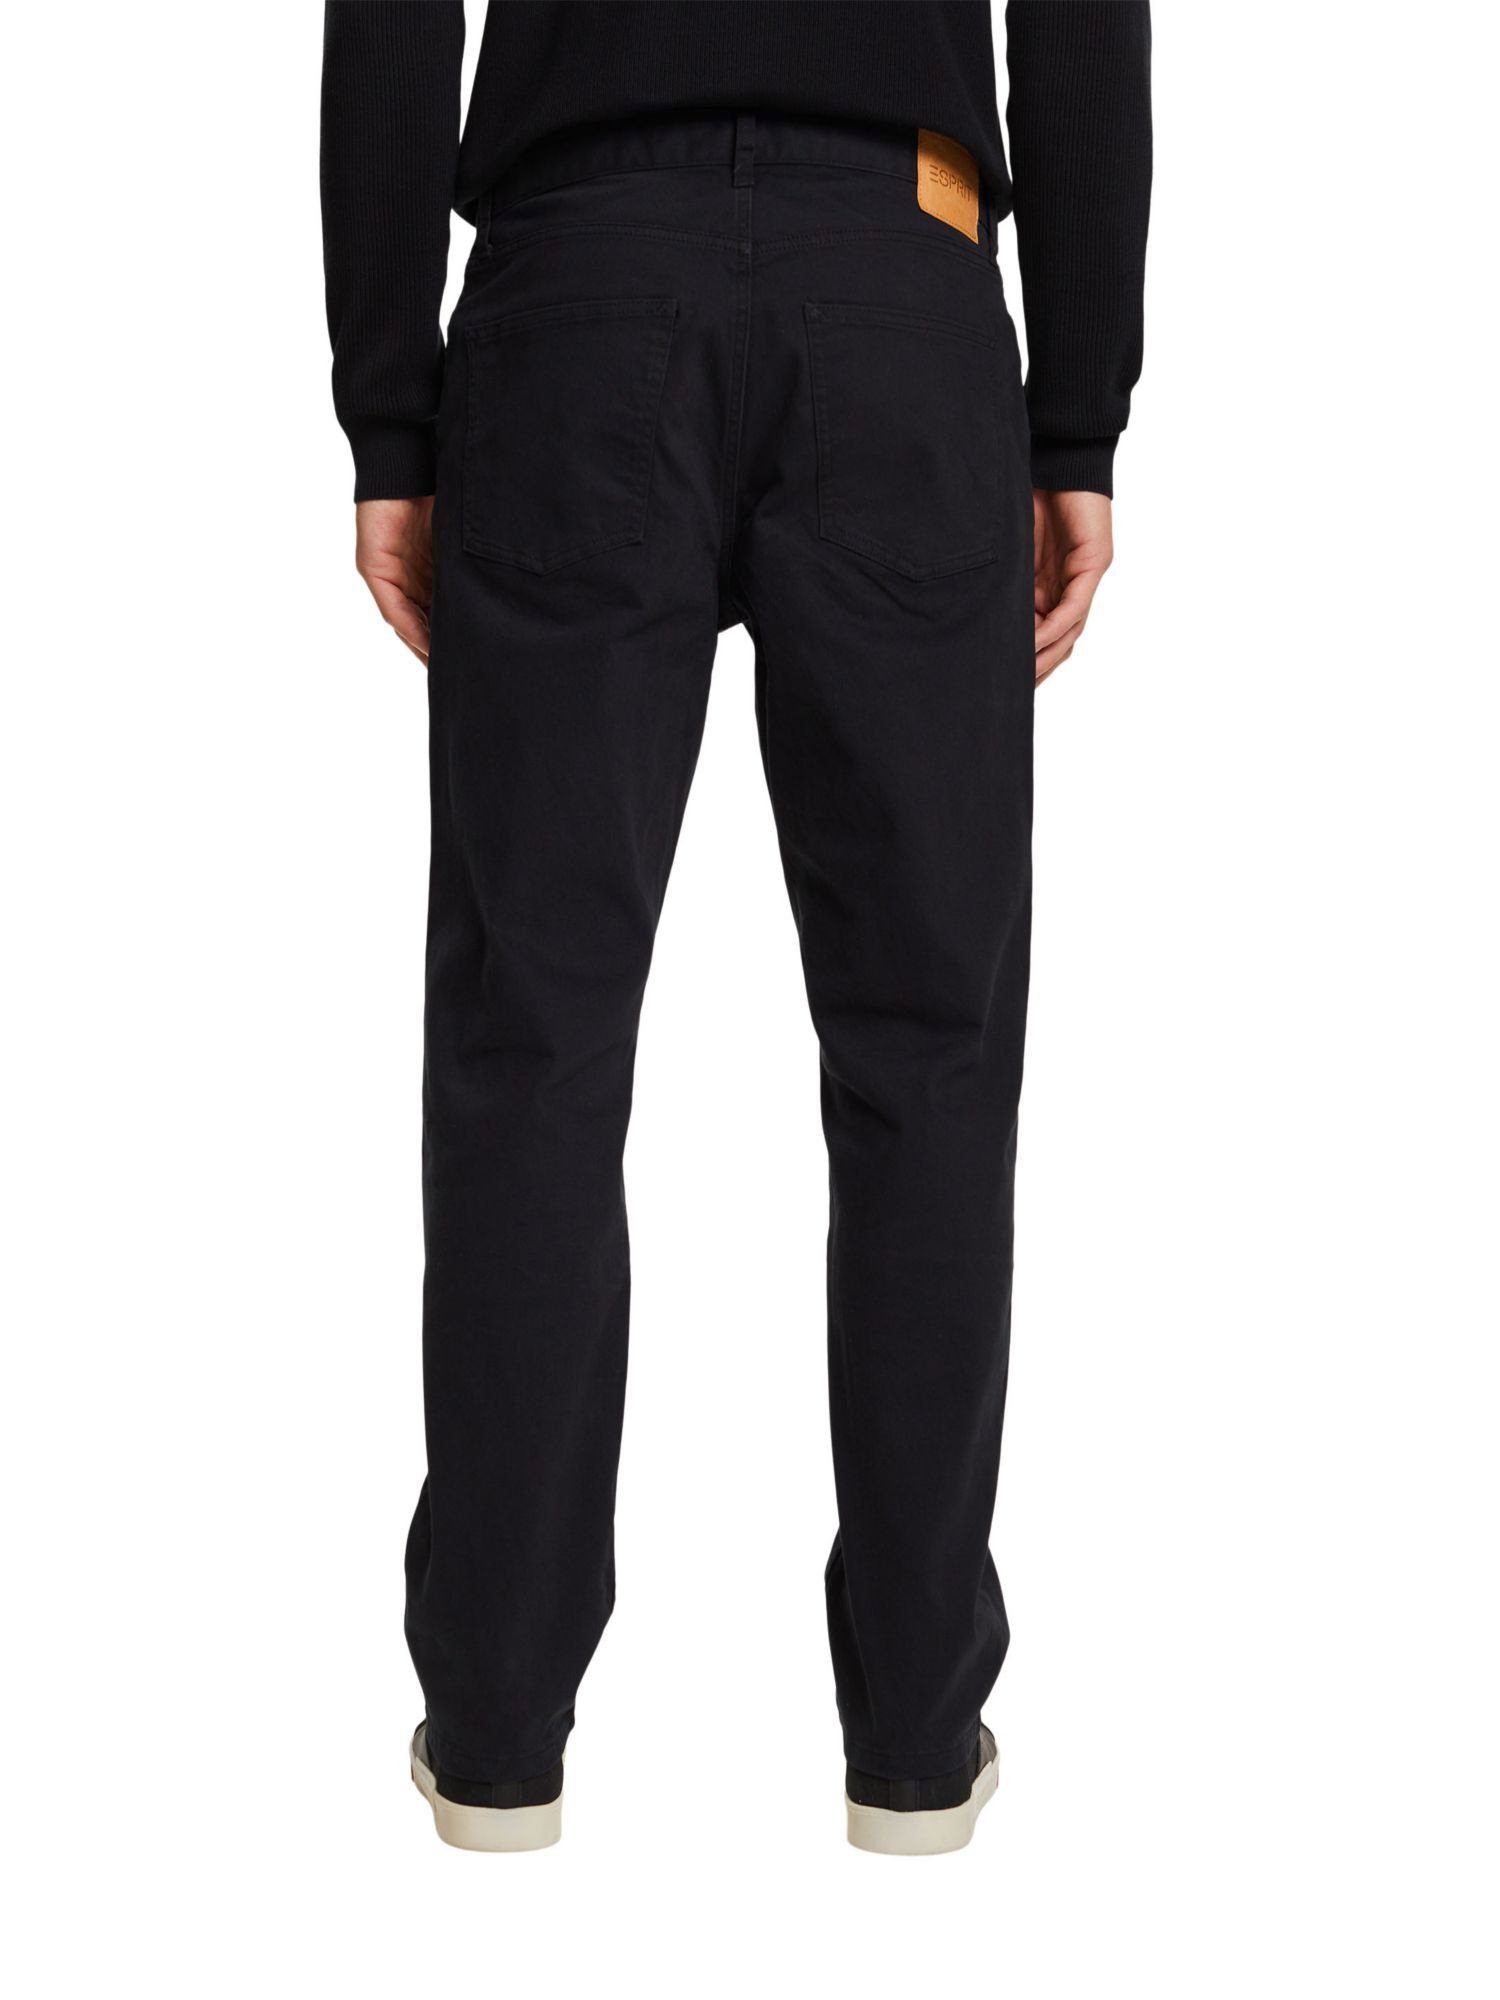 Passform gerader BLACK Esprit Stretch-Hose mit Klassische Hose